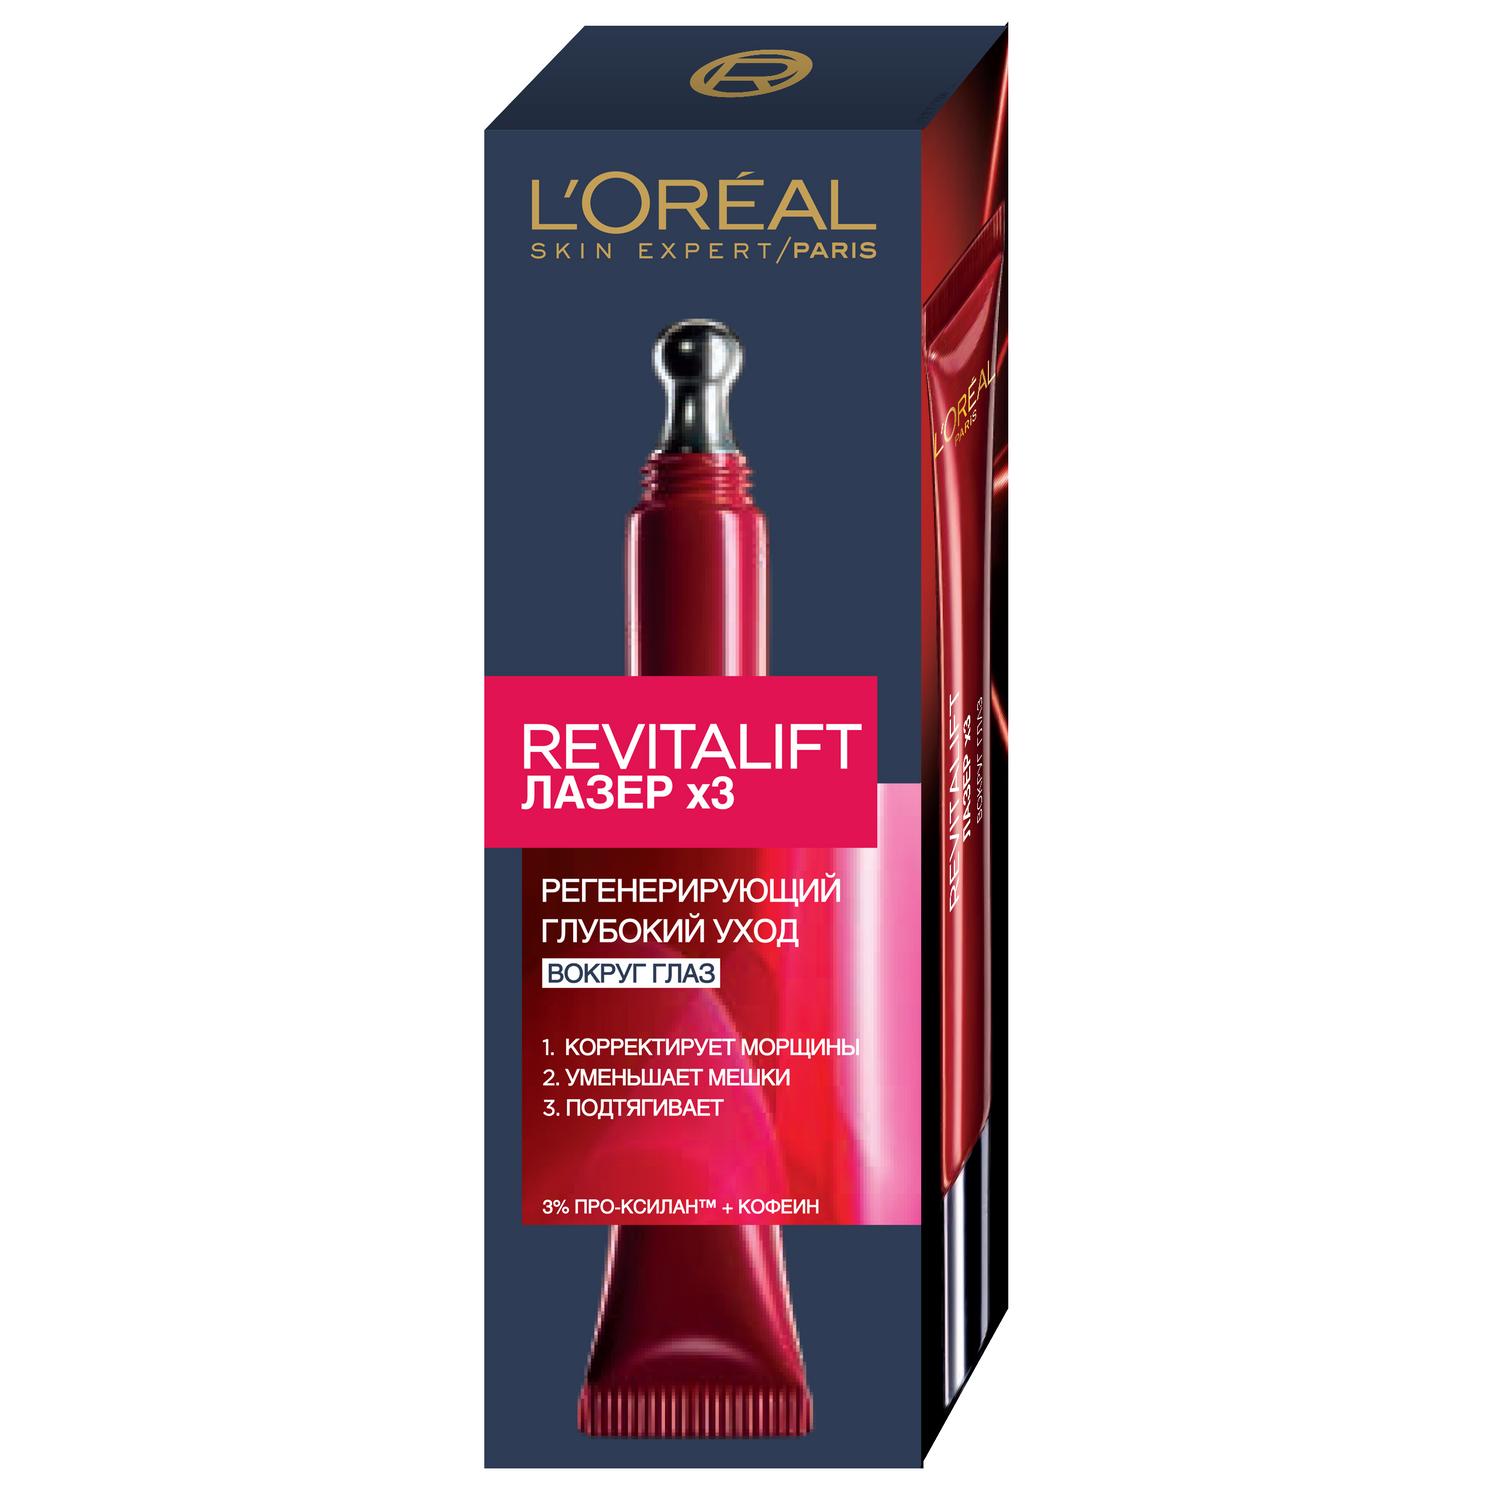 Сыворотка L’Oréal Revitalift Лазер х3 30мл (A6672200) сыворотка cica для лица супервосстановление 30мл